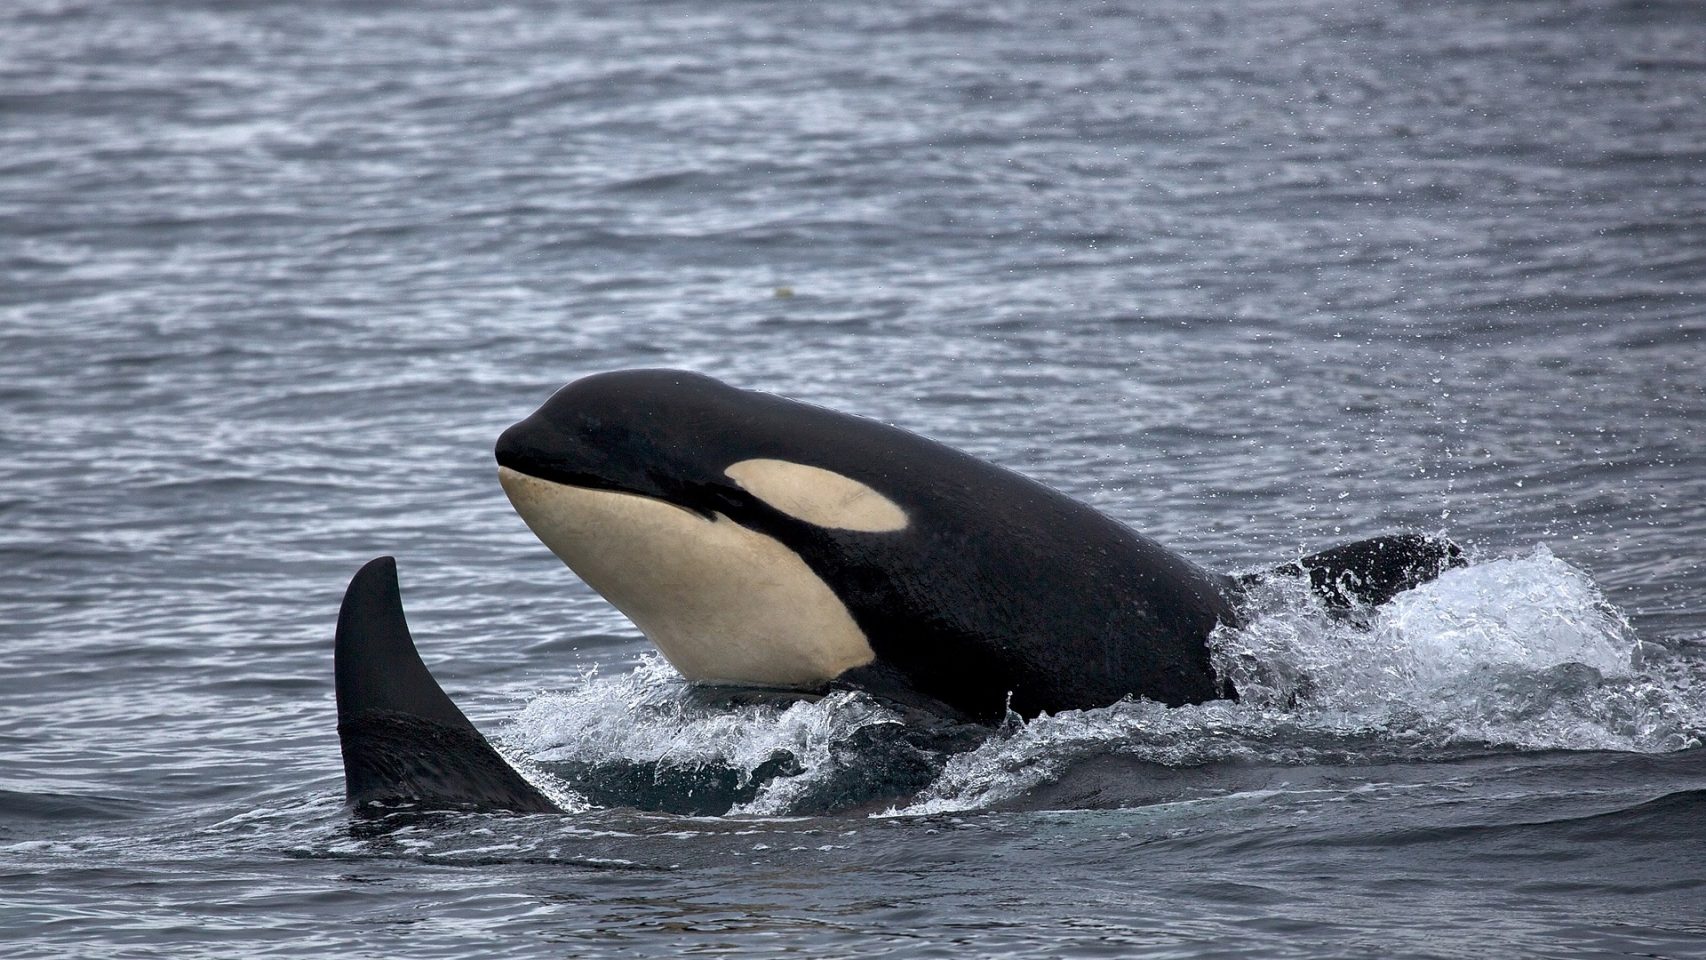 Foto de archivo de orcas.